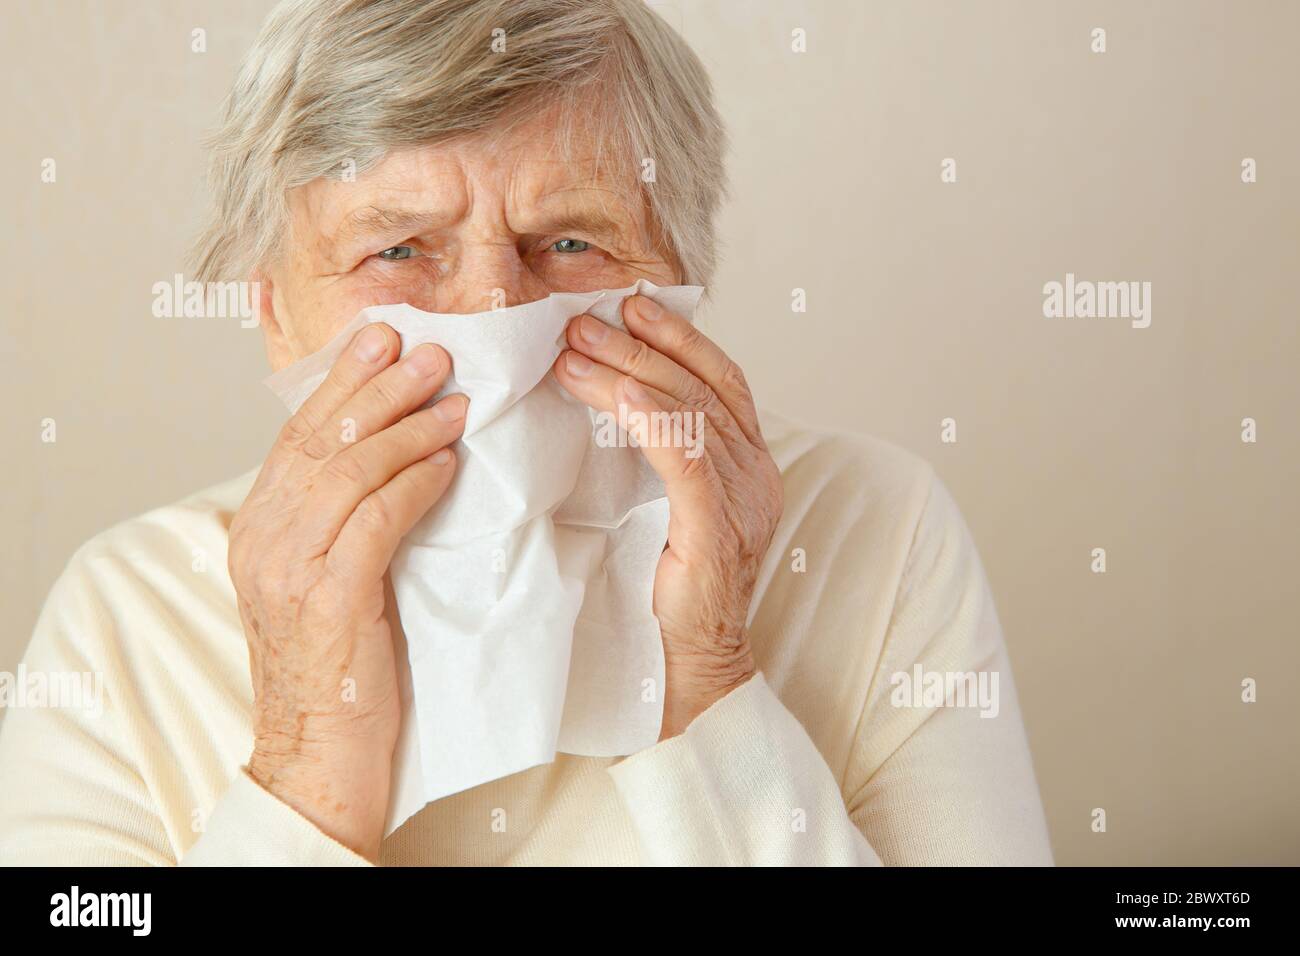 Naso che corre. Donna anziana che passa tutto il giorno mentre ha il naso che corre. Una donna anziana ha un naso chiuso o naso che cola ed è in febbre. Foto Stock